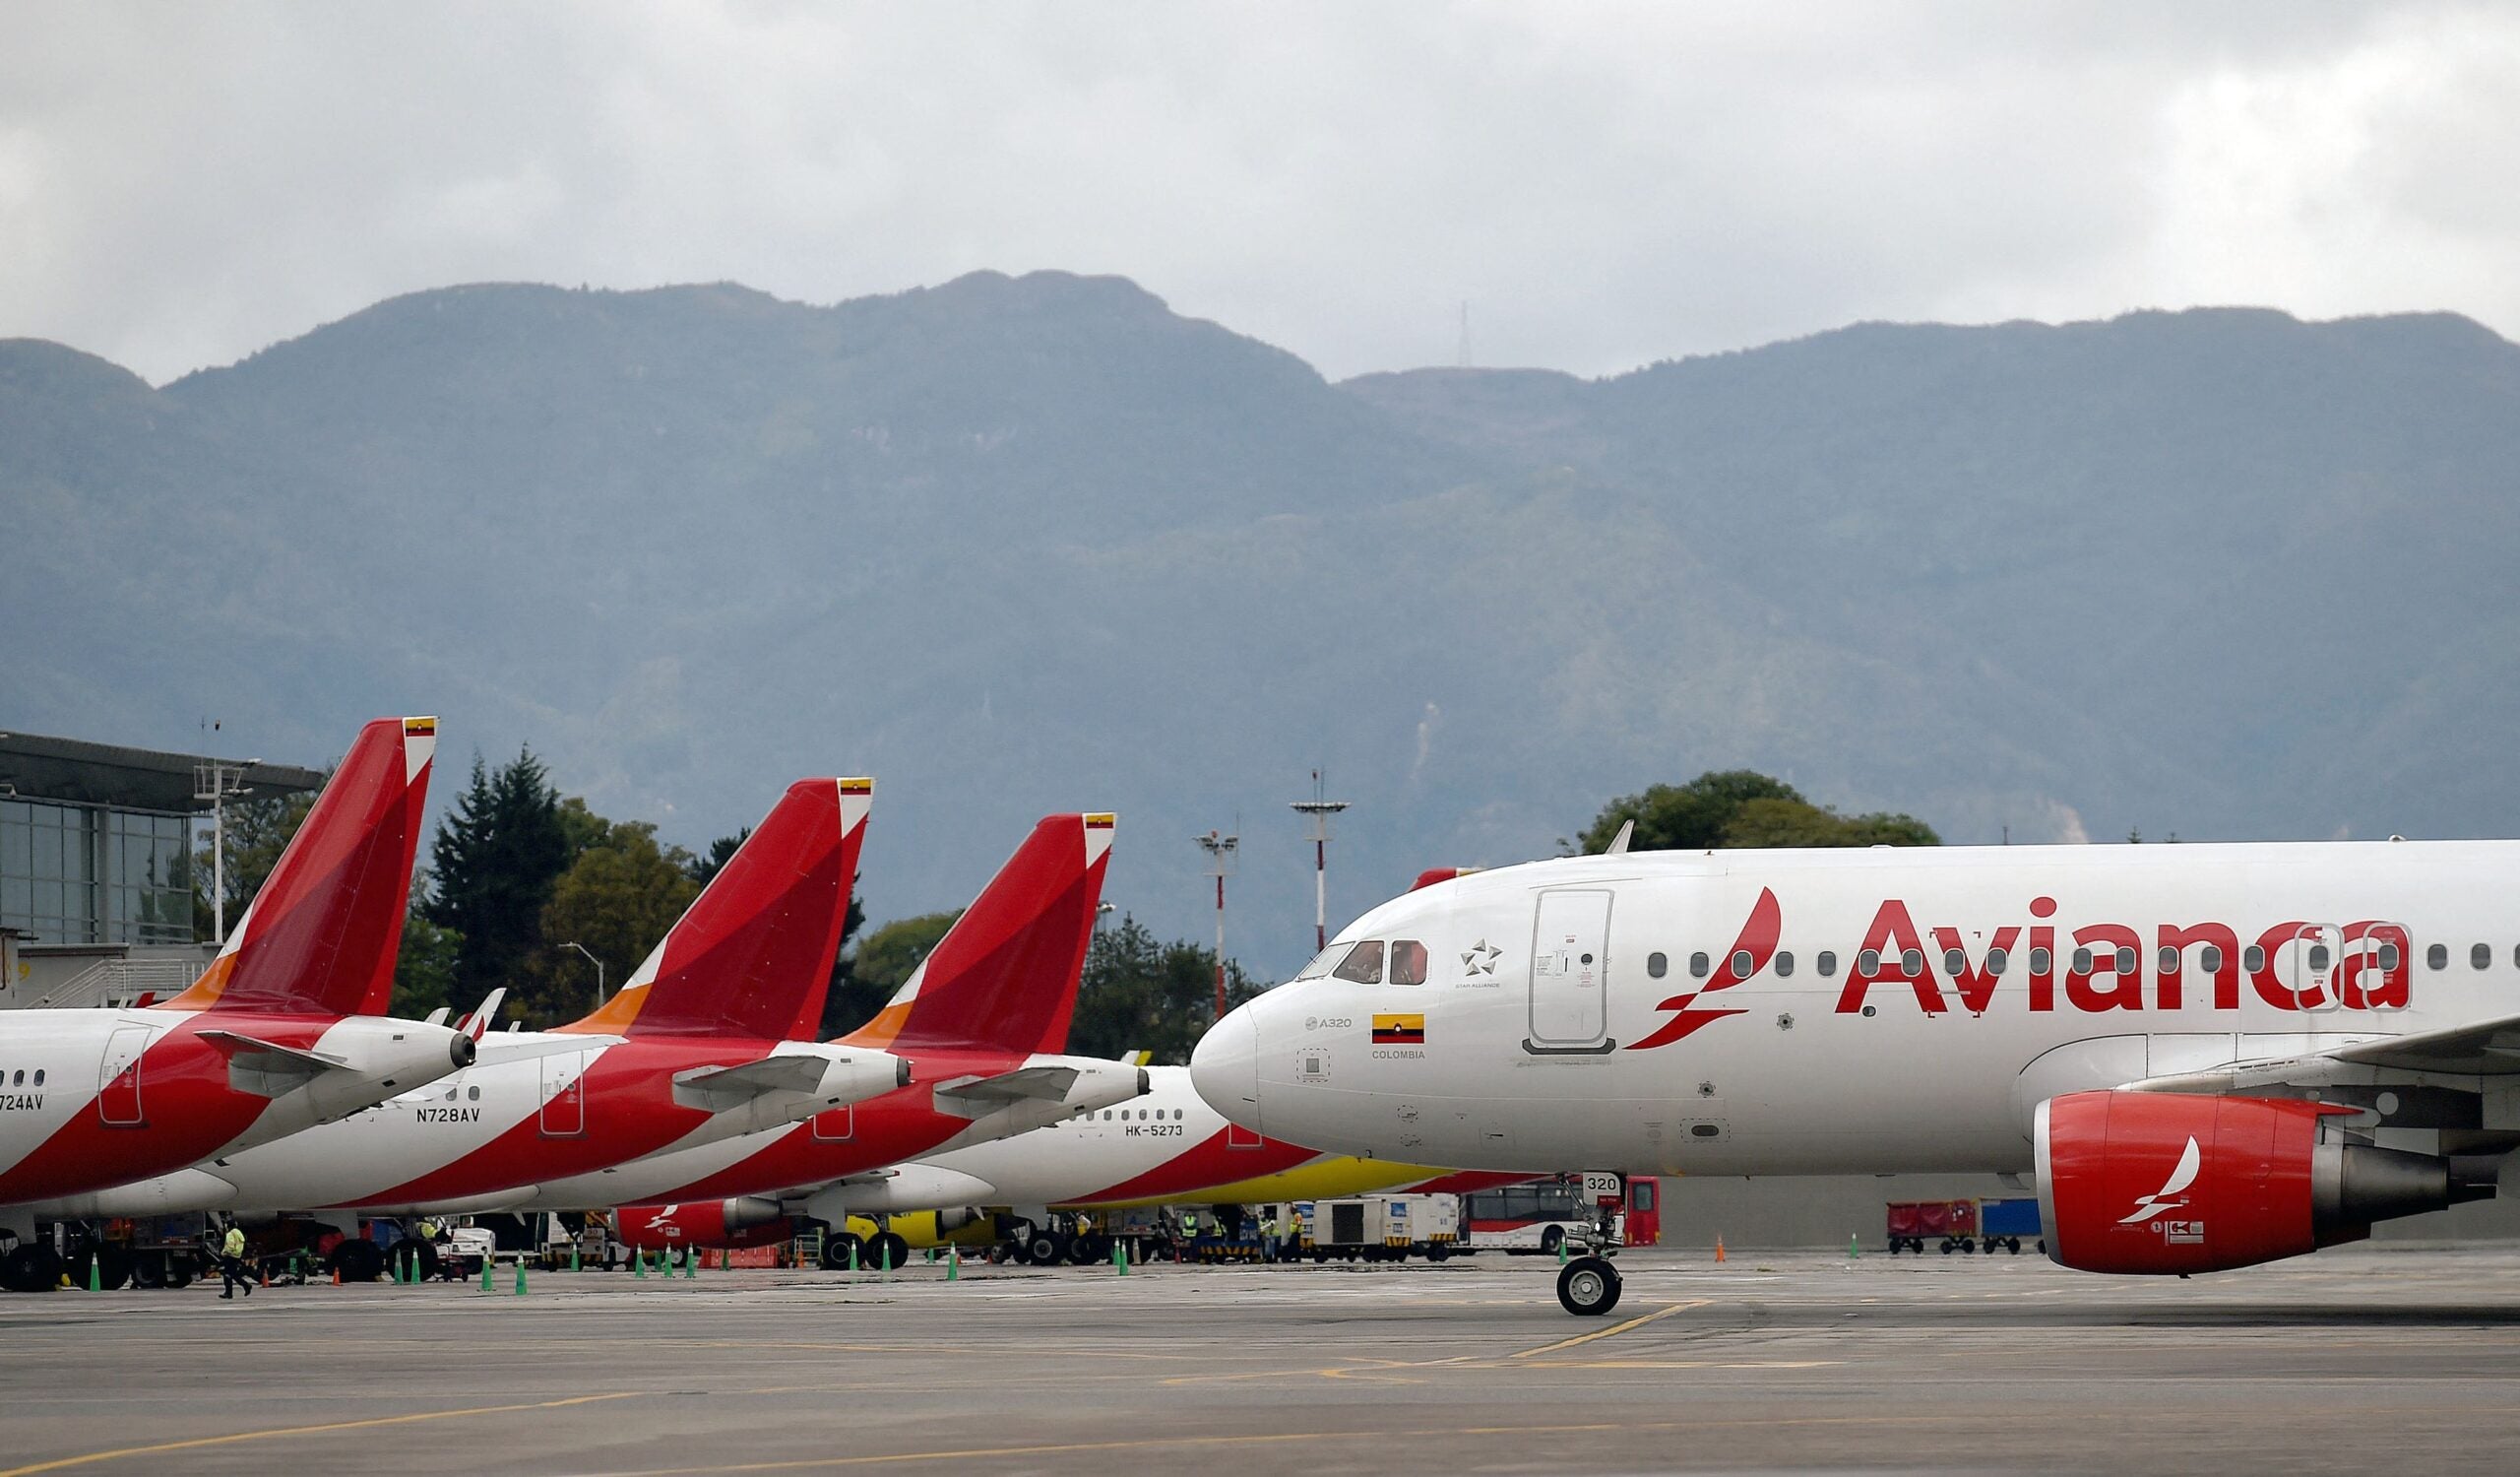 Avianca jets in Bogota